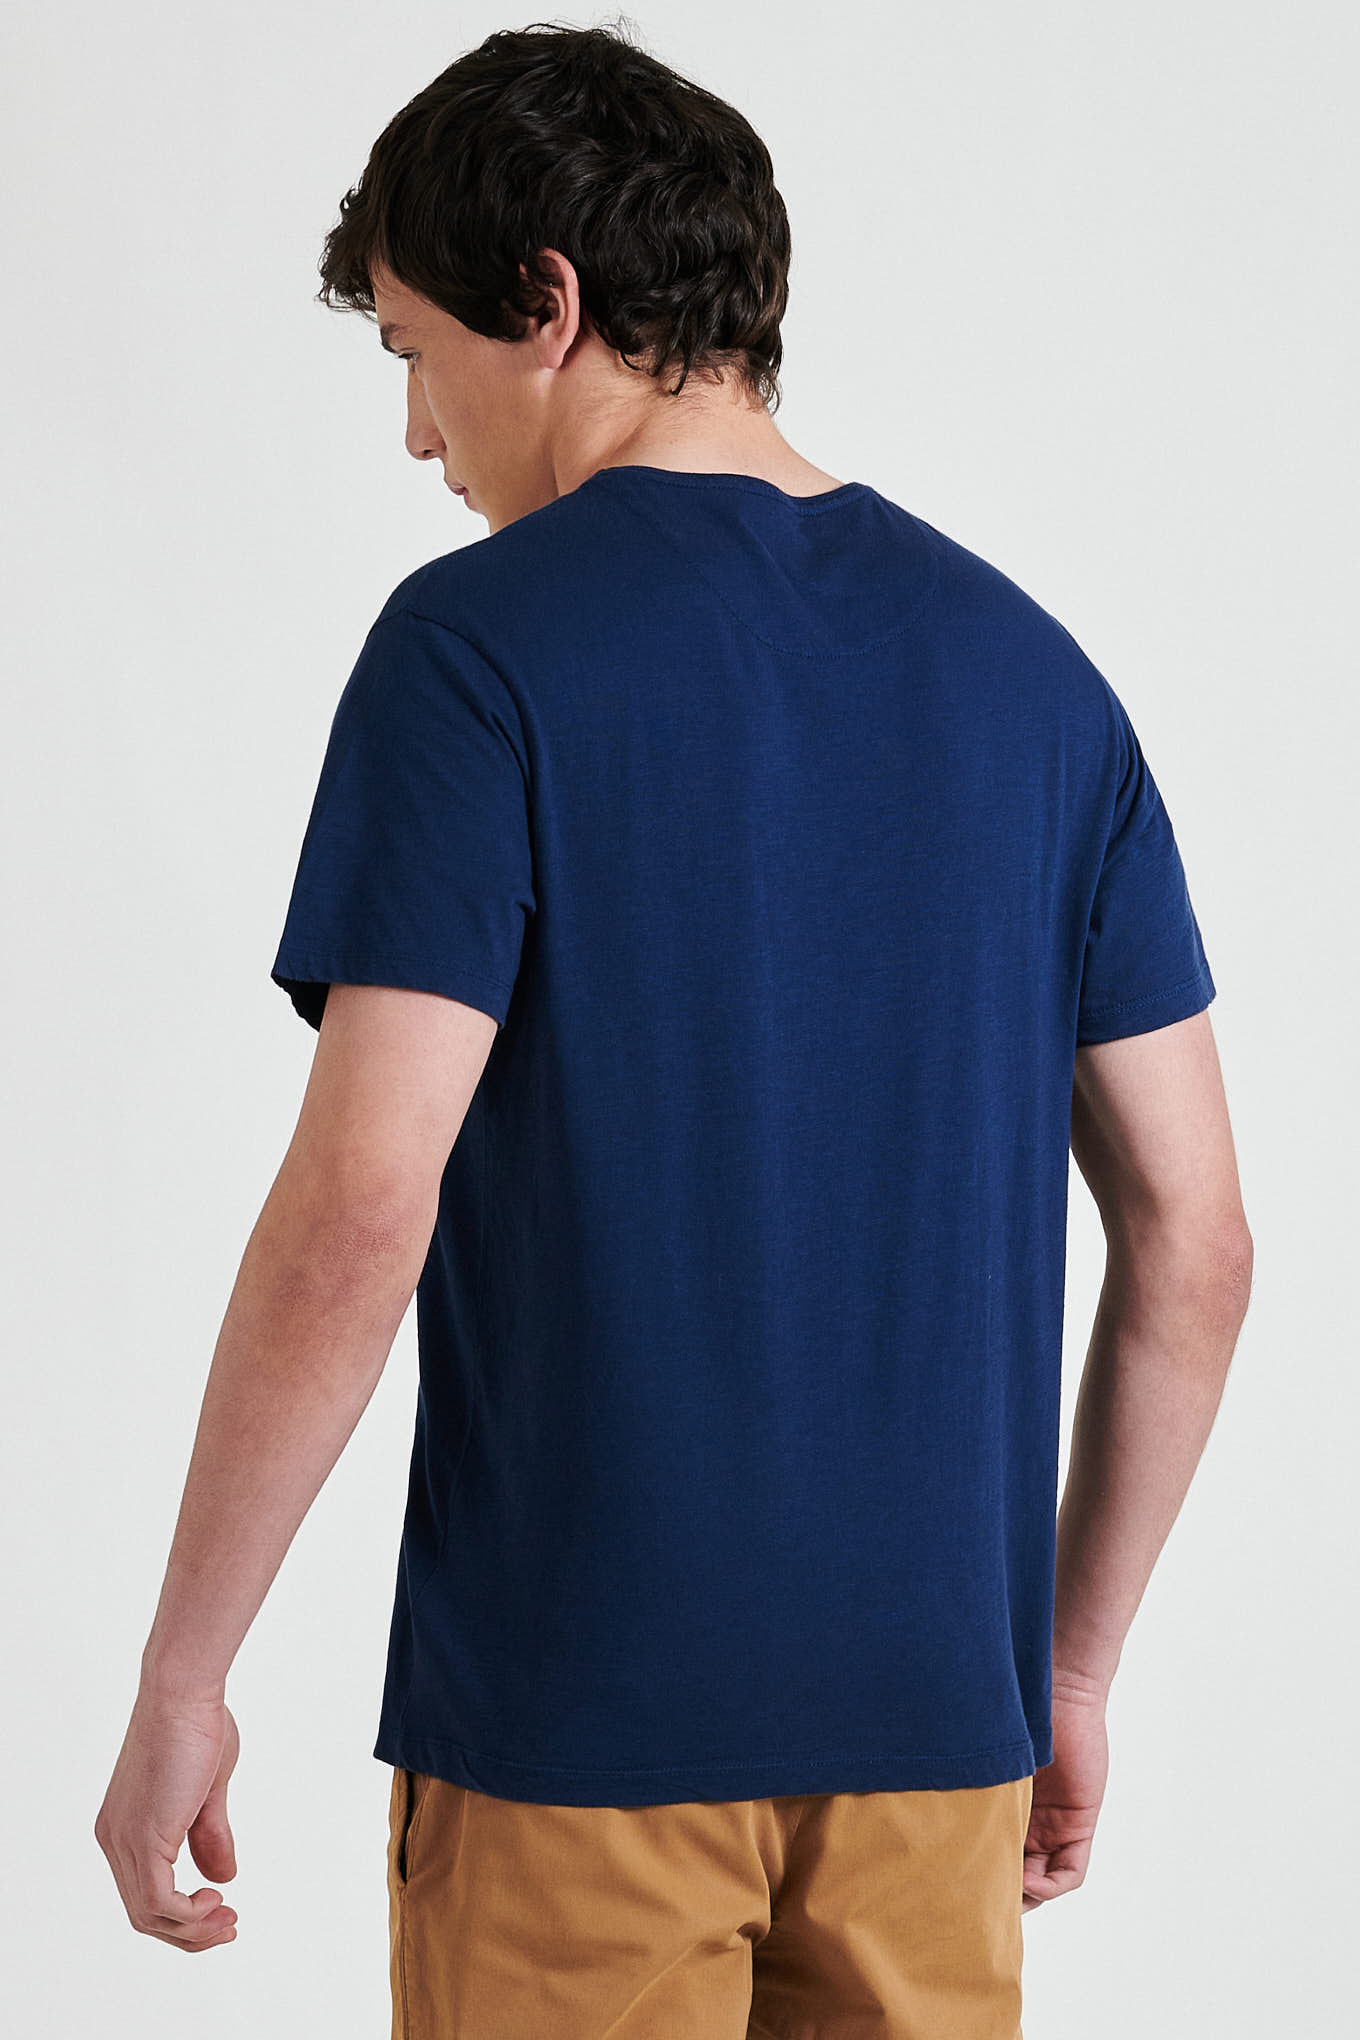 T-Shirt Azul Escuro Sport Homem